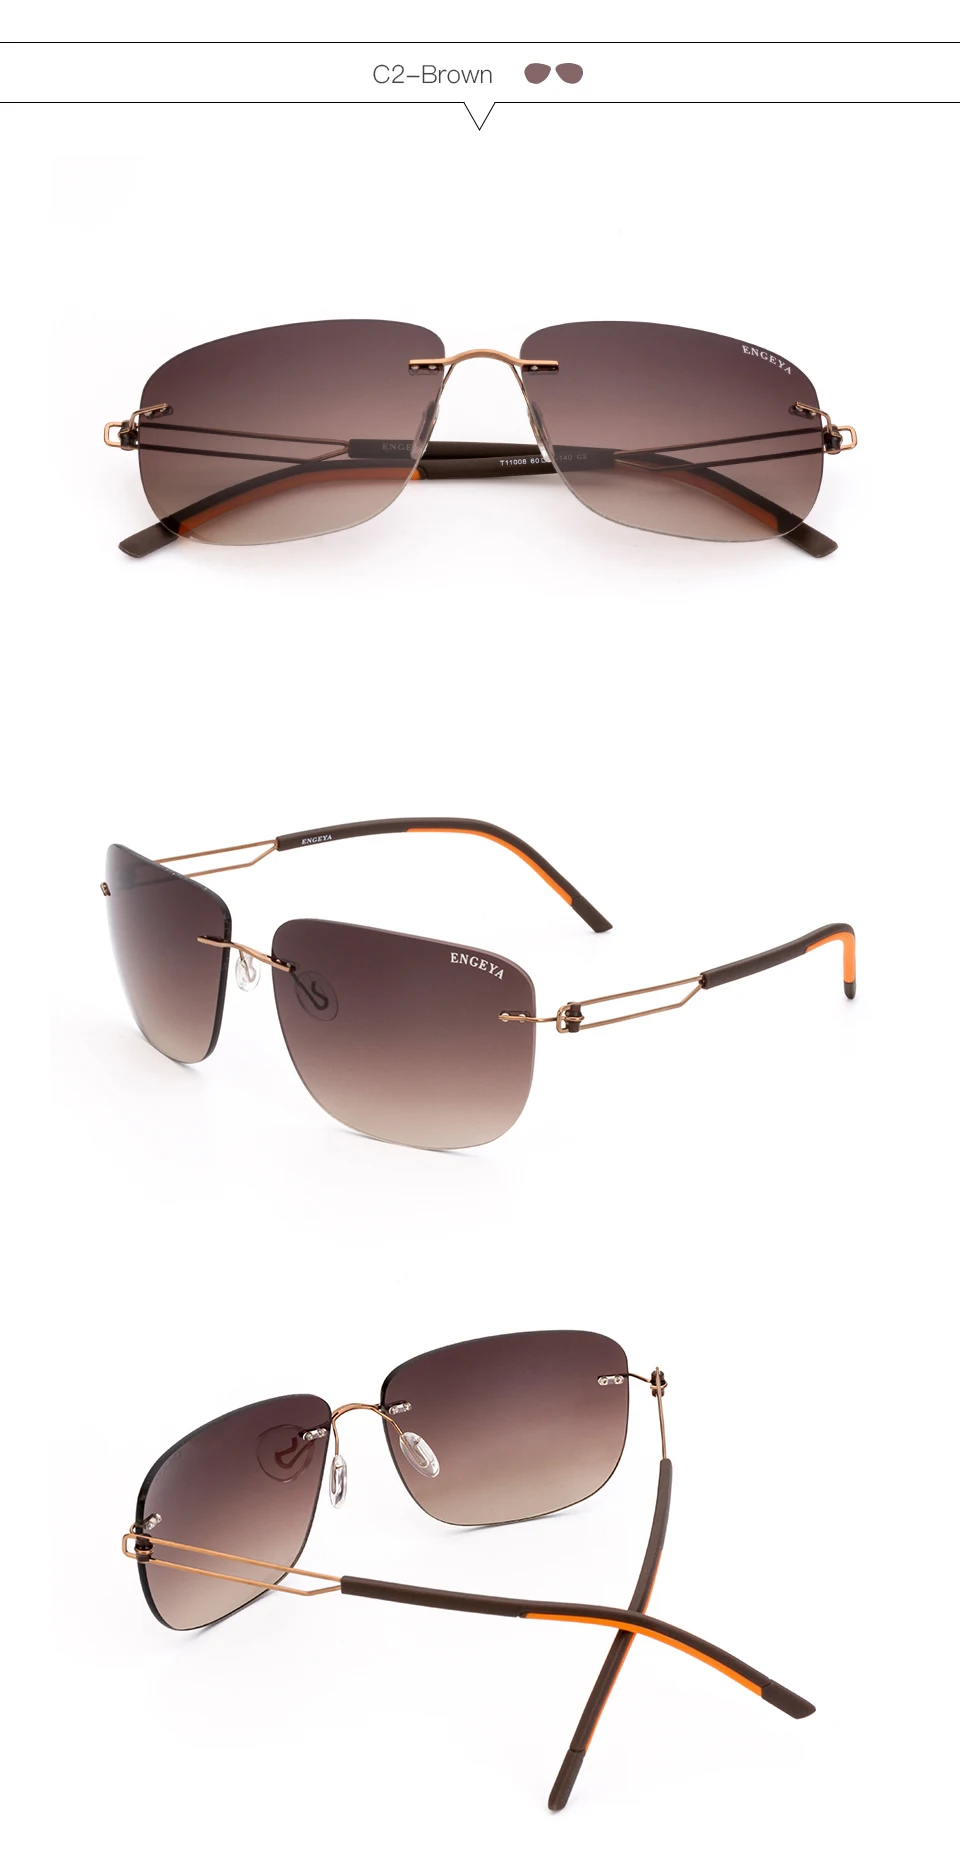 ENGEYA, высококачественные металлические роскошные Брендовые мужские солнцезащитные очки, полароидные линзы, UV400, квадратные, дизайнерские, для вождения, без оправы, солнцезащитные очки# T11008